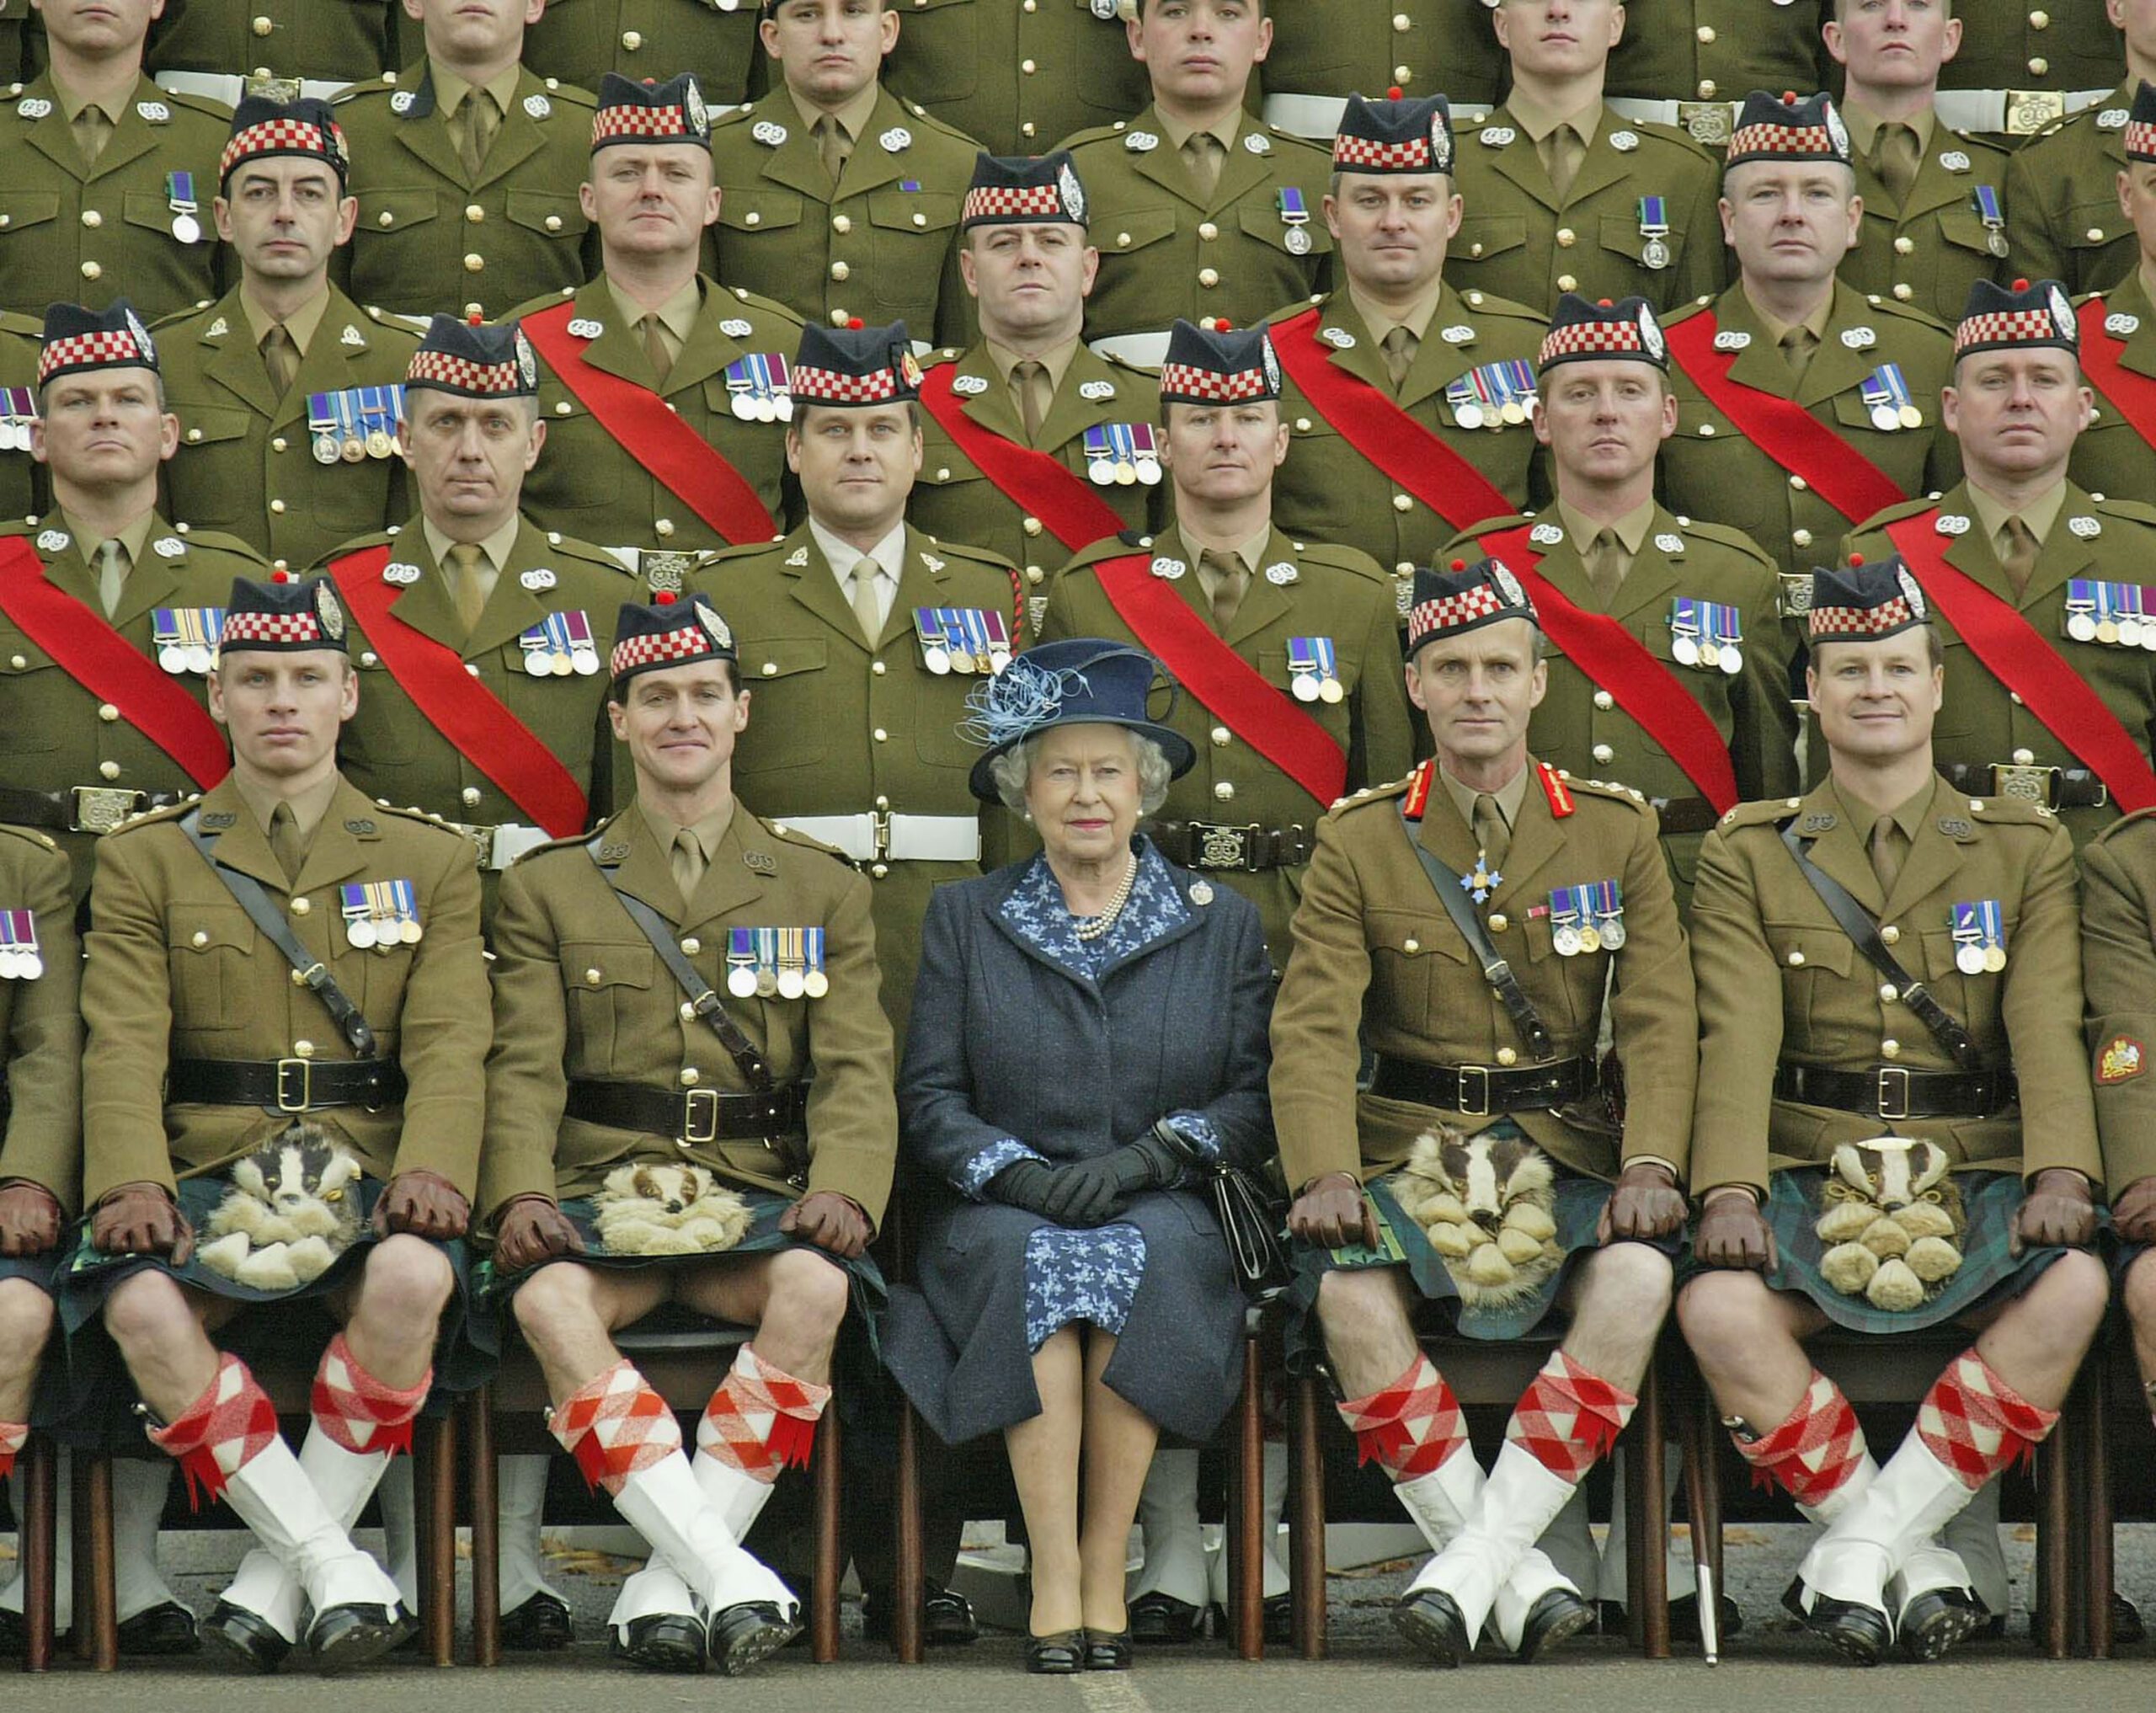 Una imagen muestra a la reina Isabel II sentada junto a un coronel cuyo kilt era demasiado revelador y a algunos les pareció que mostraba sus genitales (pene y testículos).